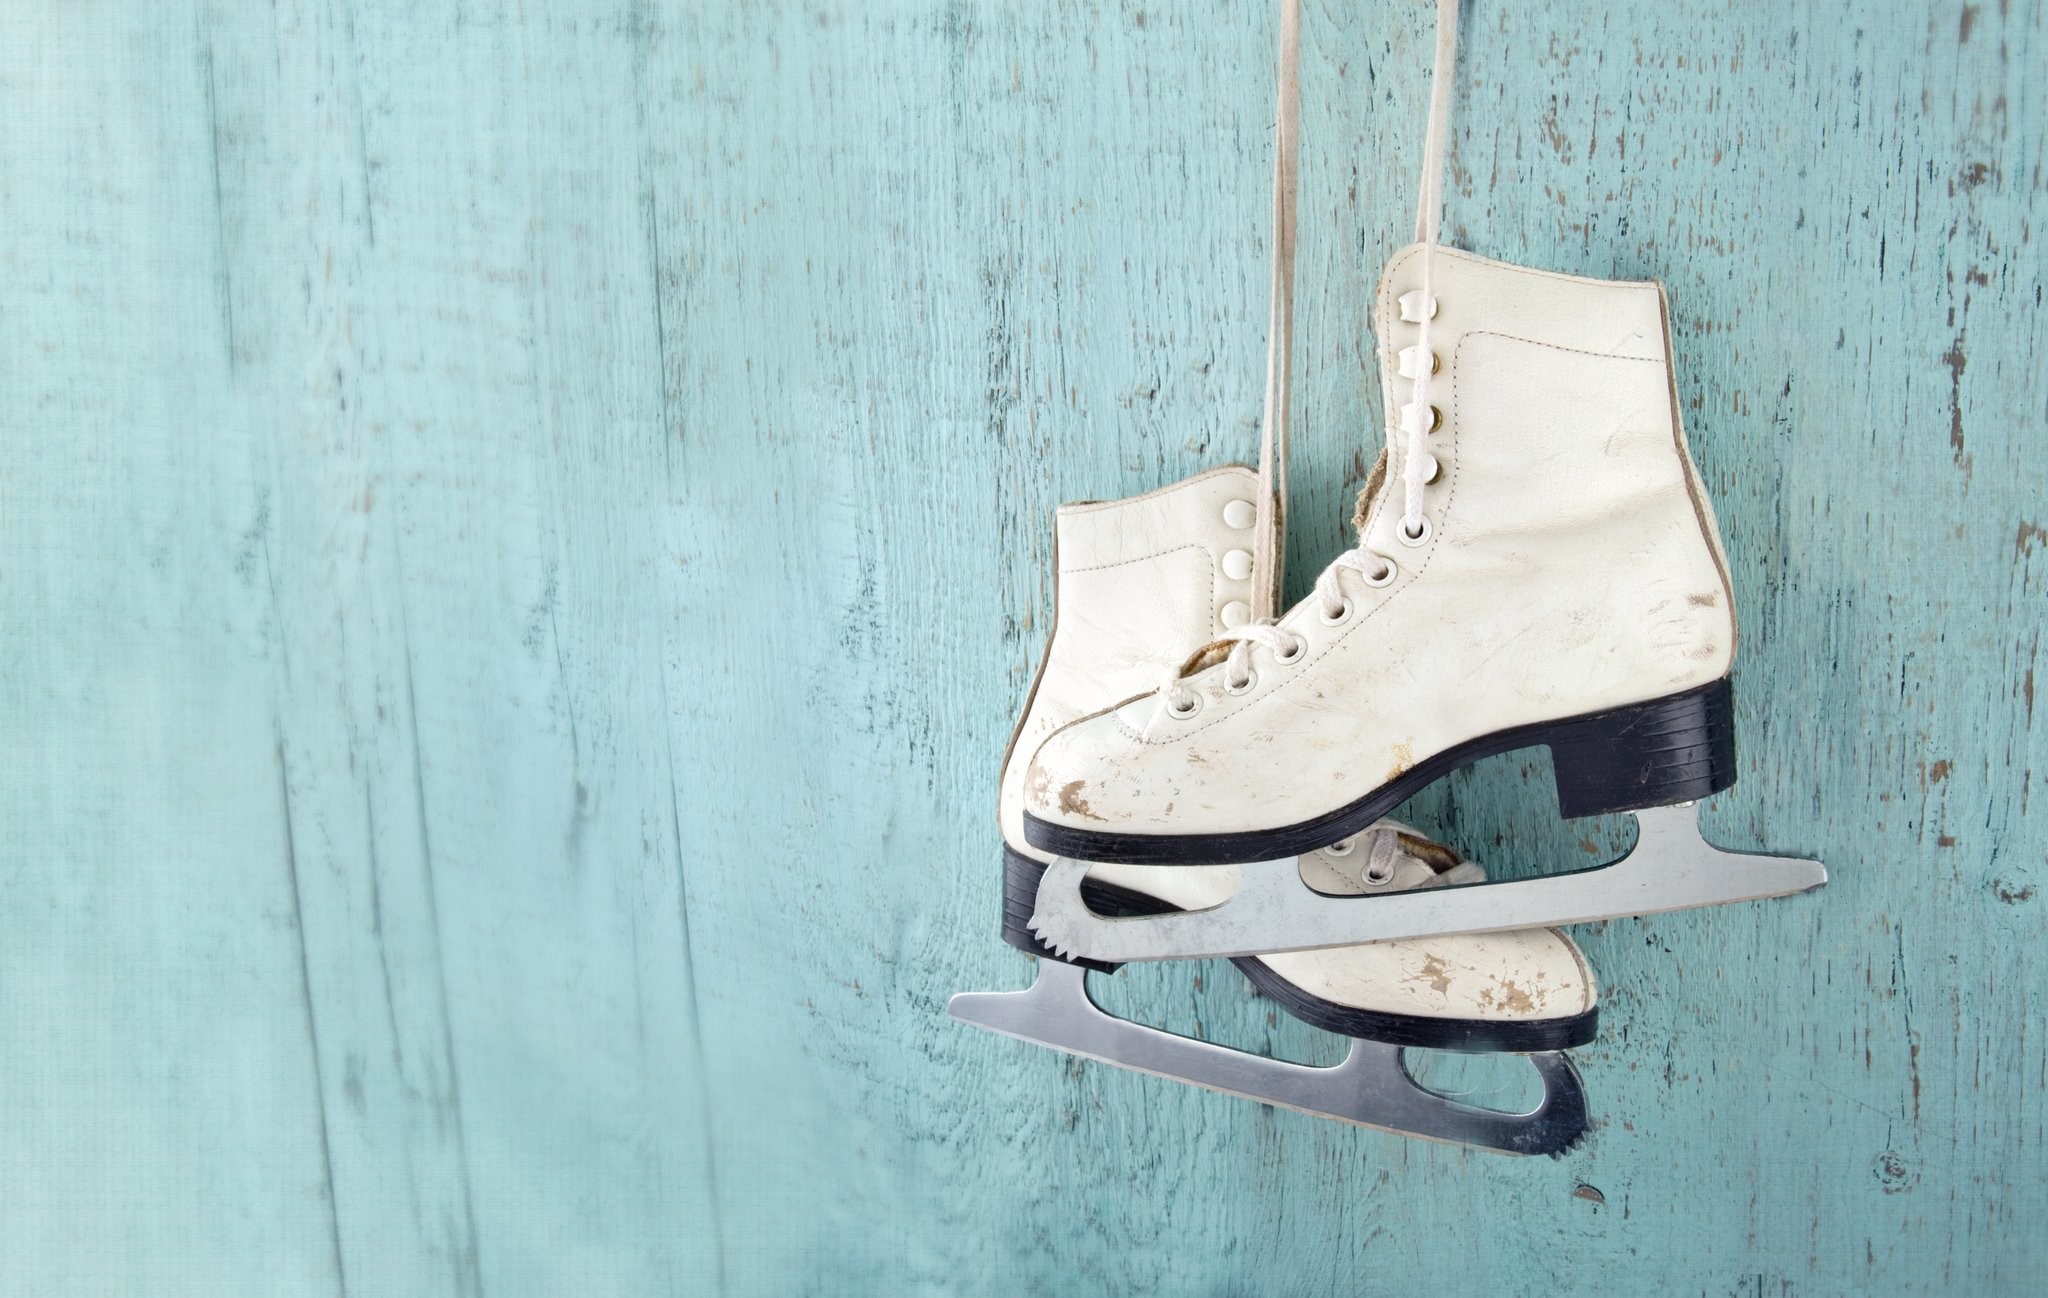 아이스 스케이팅 벽지,피겨 스케이트,신발류,아이스 하키 장비,아이스 스케이트,하얀